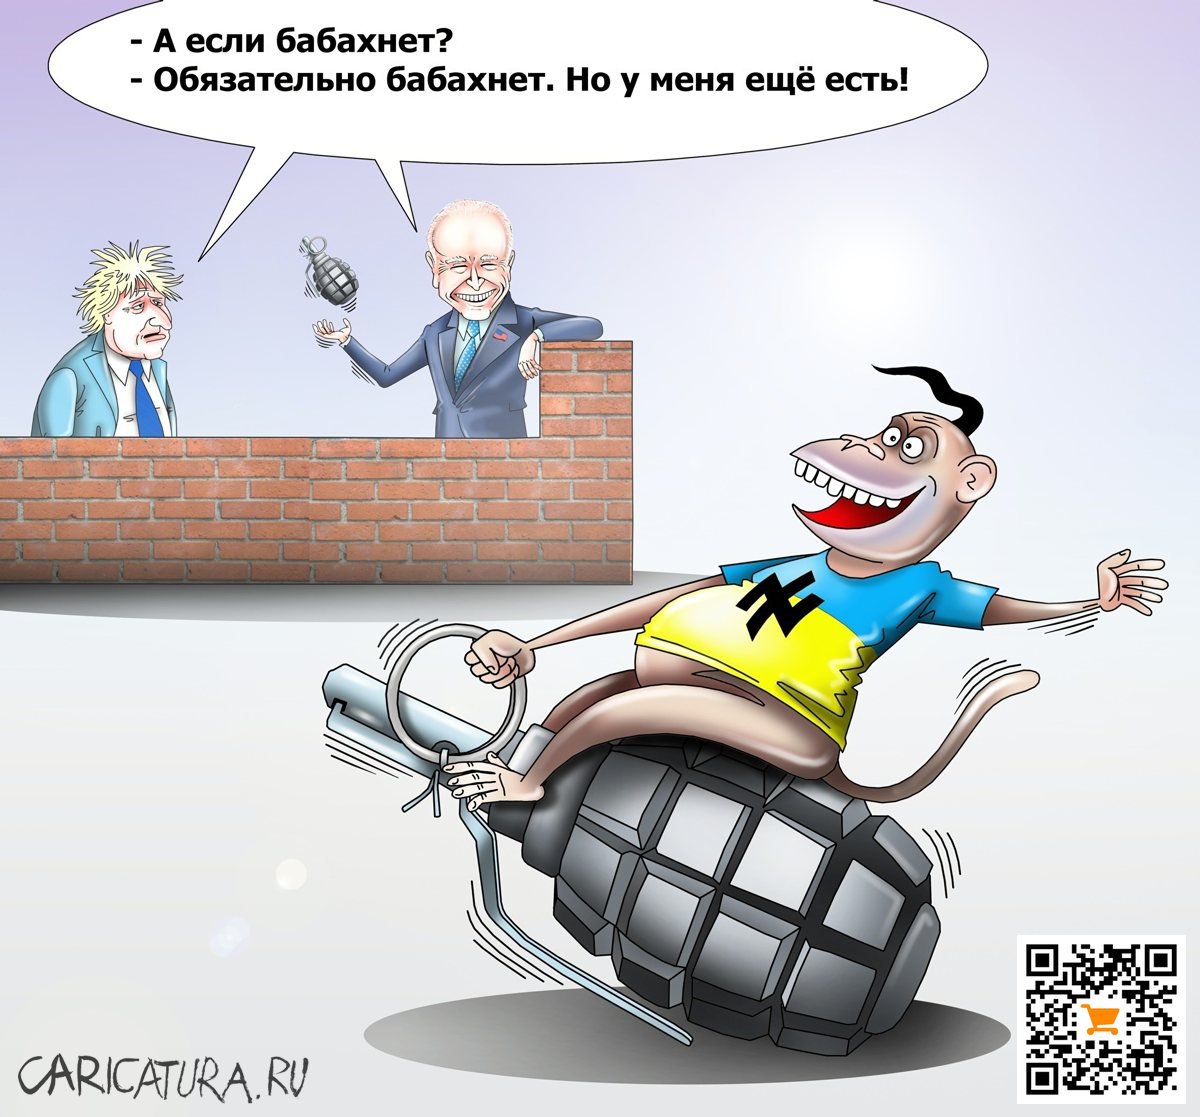 Карикатура "Обезьяна с гранатой", Сергей Корсун